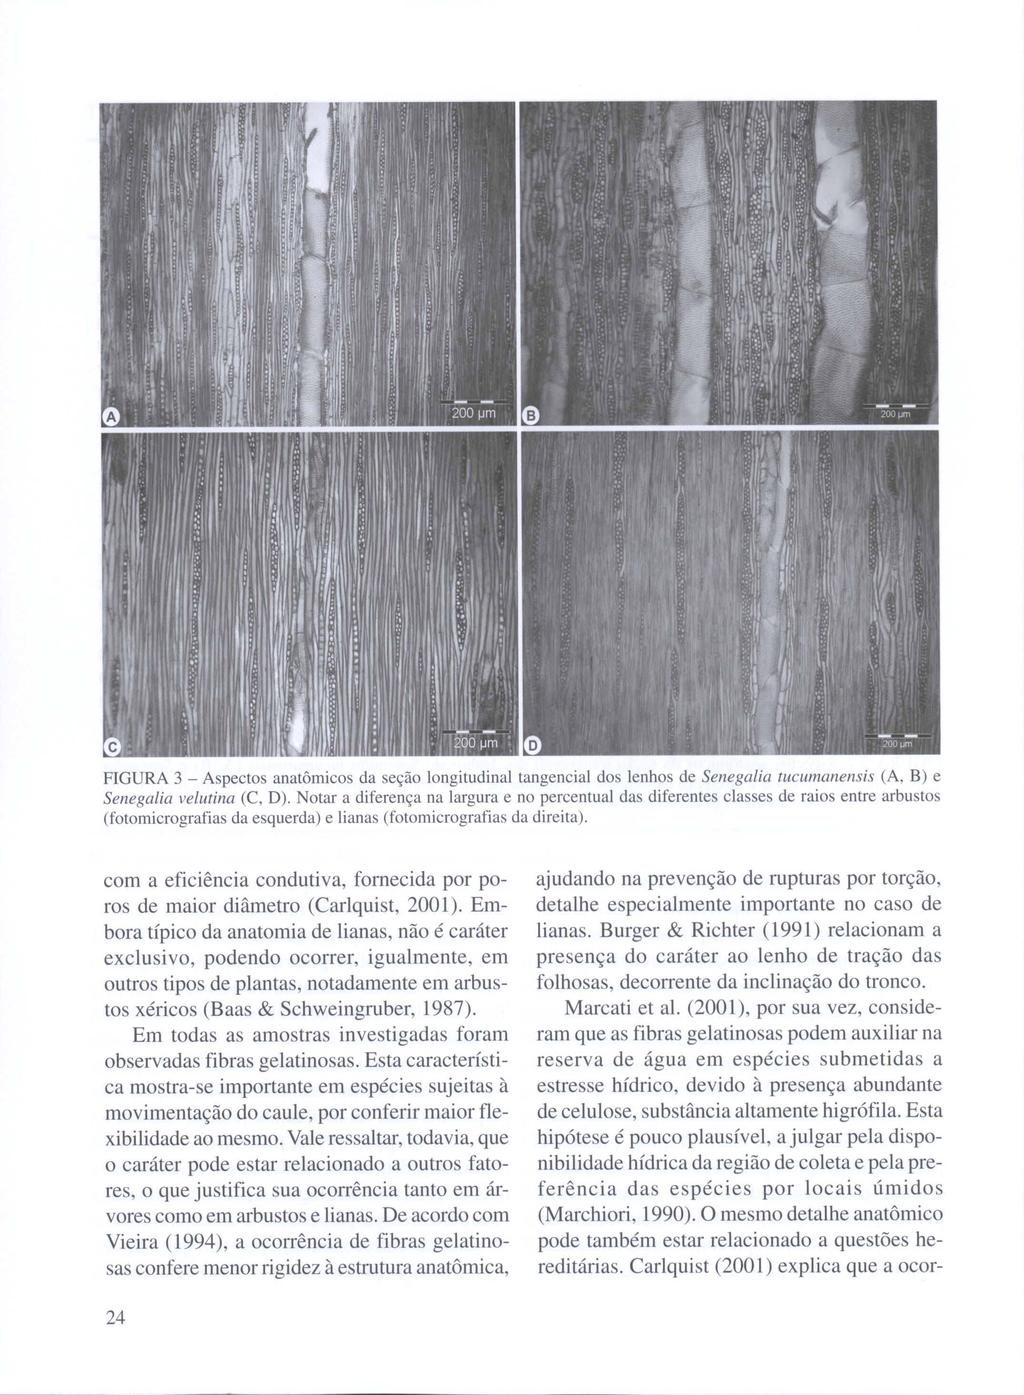 FIGURA 3 - Aspectos anatômicos da seção longitudinal tangencial dos lenhos de Senegalia tucumanensis (A, B) e Senegal ia velutina (C, D).